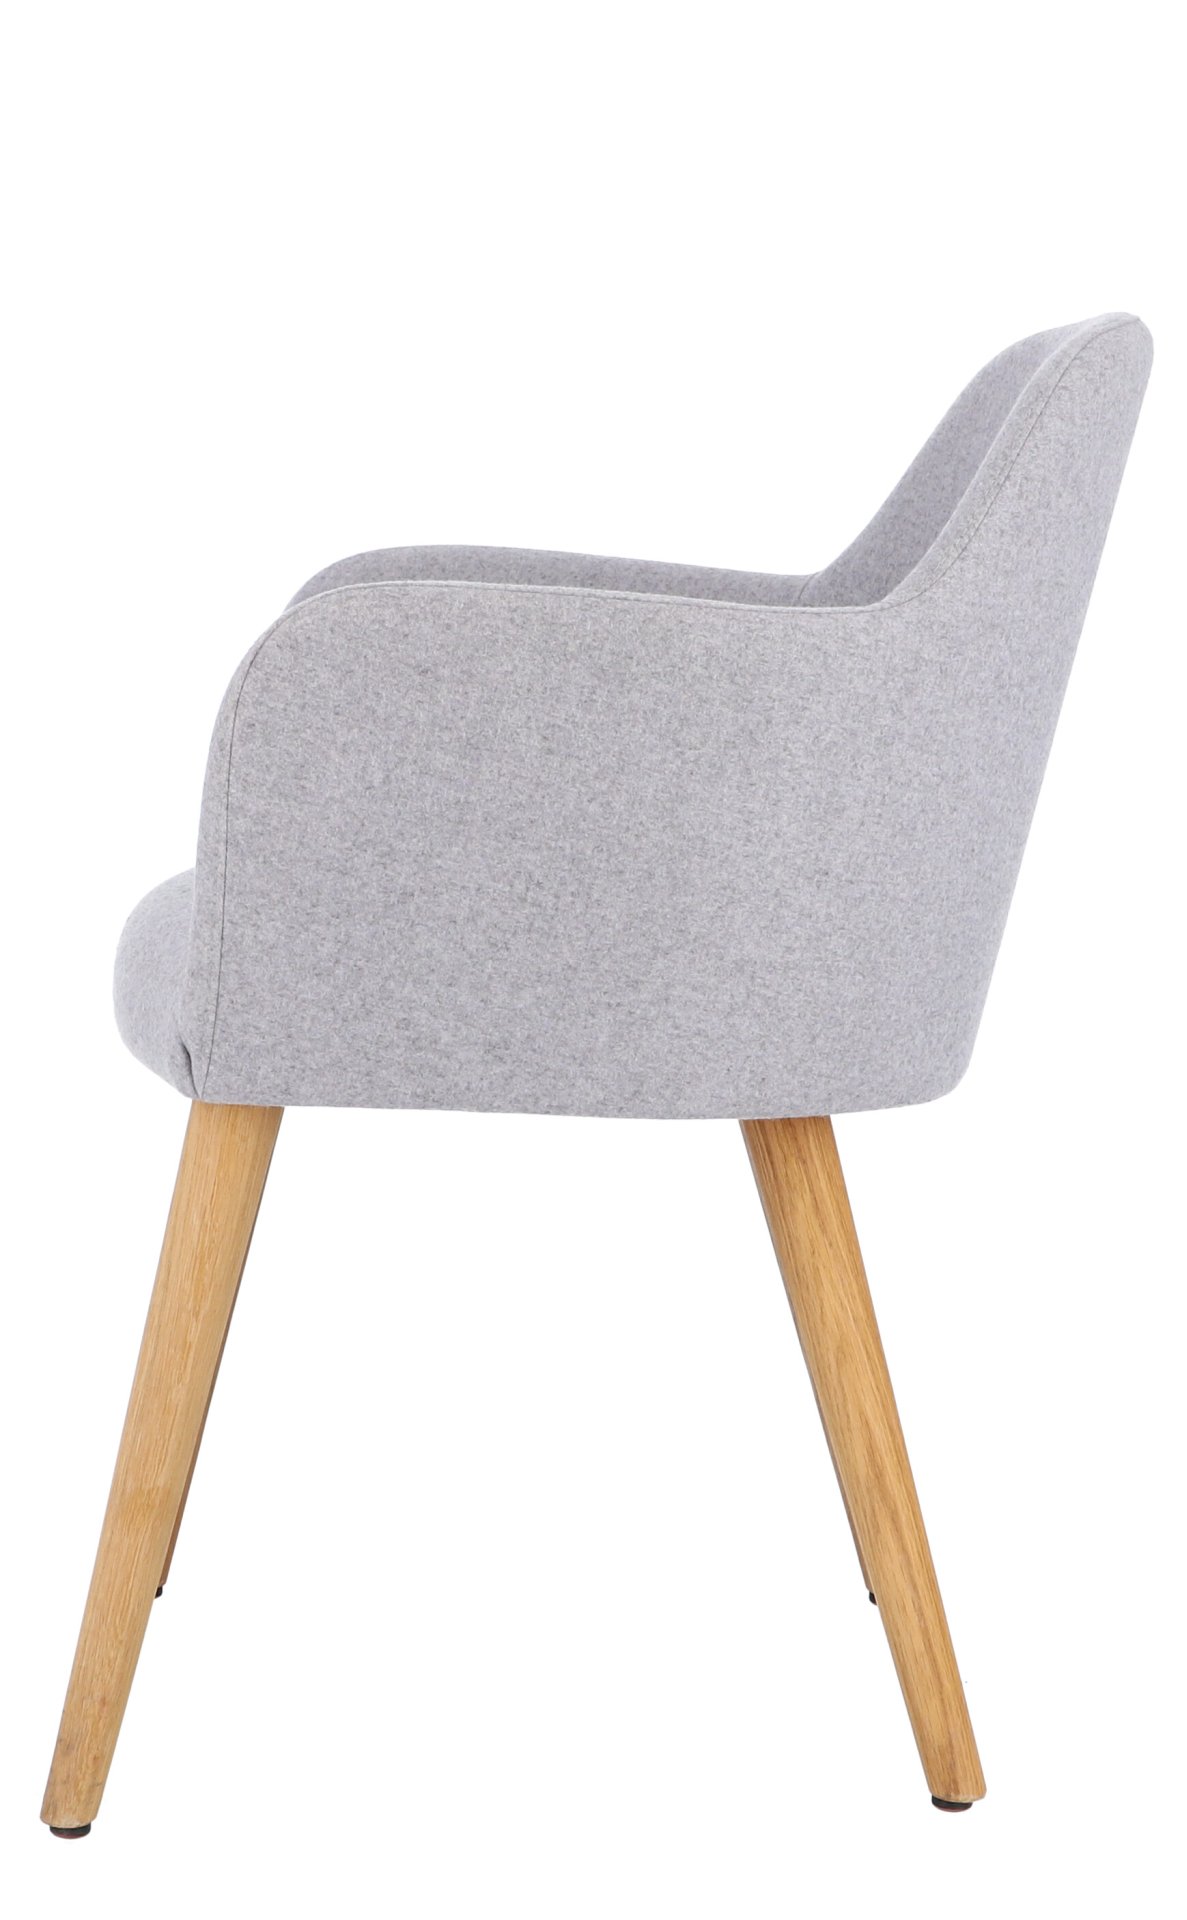 Der Sessel Flaminia wurde aus einem Eichenholz Gestell gefertigt. Die Sitz- und Rückenfläche ist aus Wolle. Designet wurde der Sessel von der Marke Jan Kurtz und hat eine hellgraue Farbe.